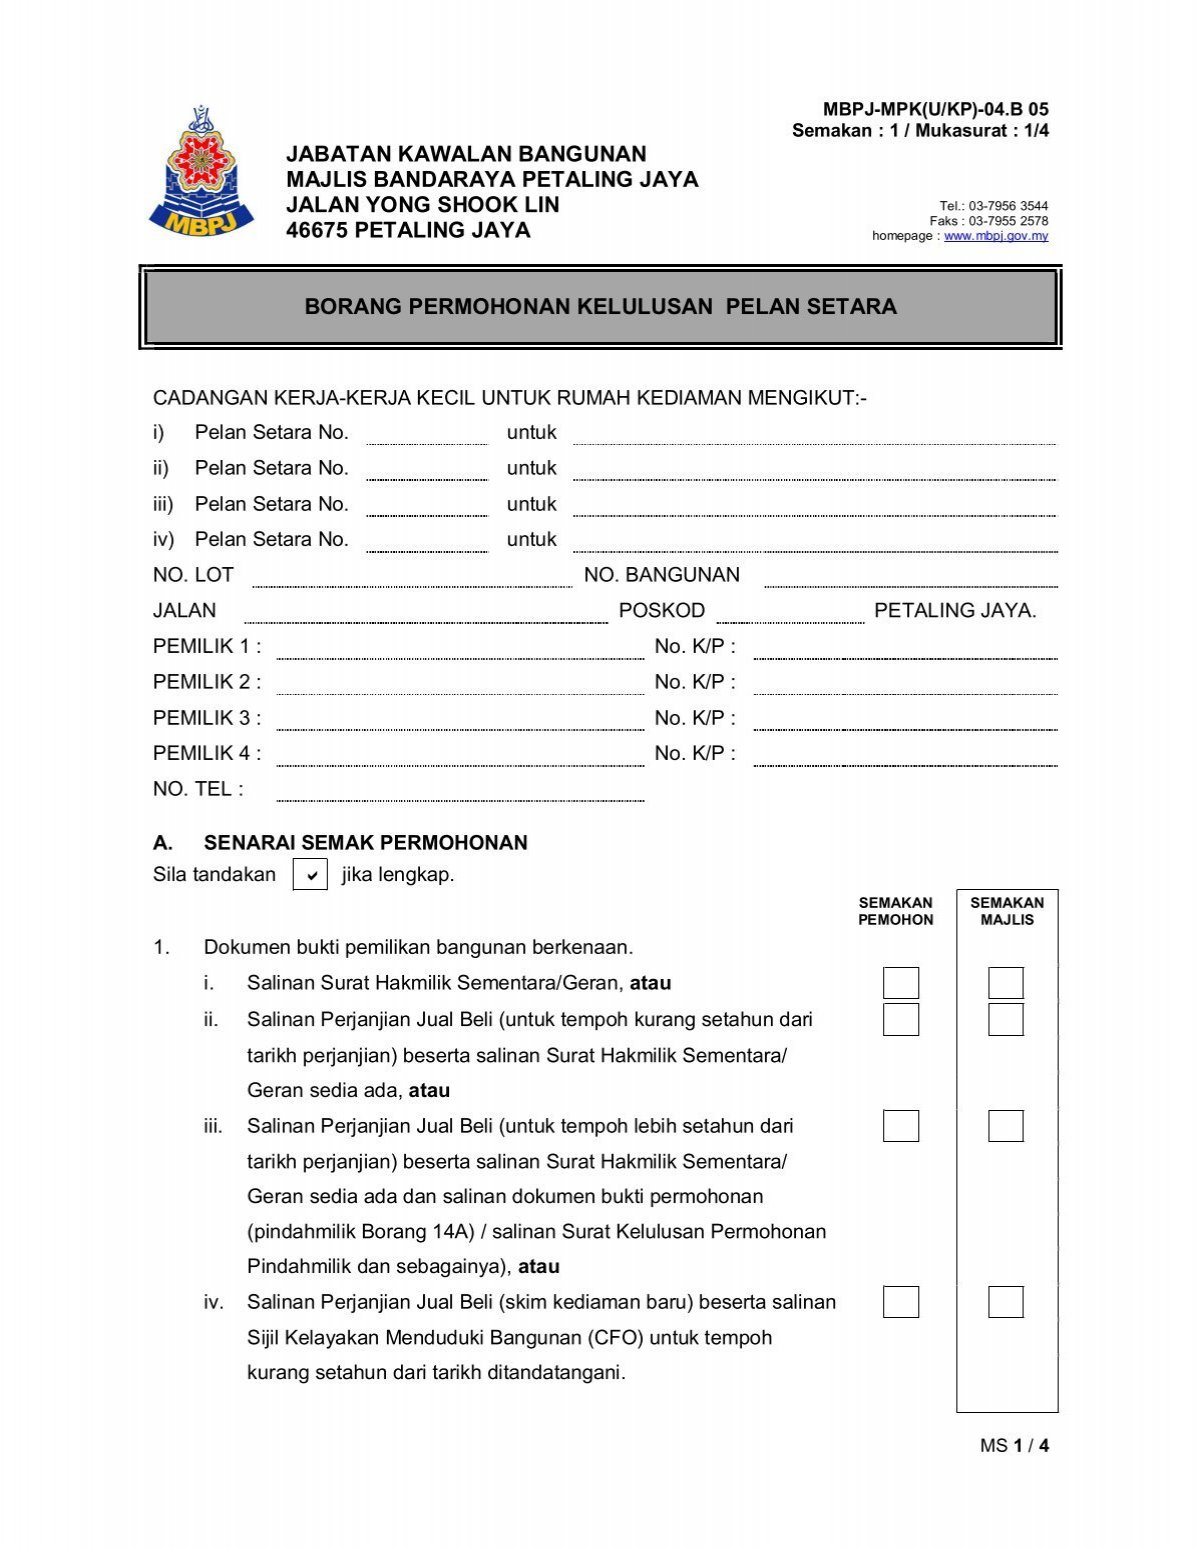 PBB05 Borang Permohonan Kelulusan Pelan Setara - MBPJ - Majlis 